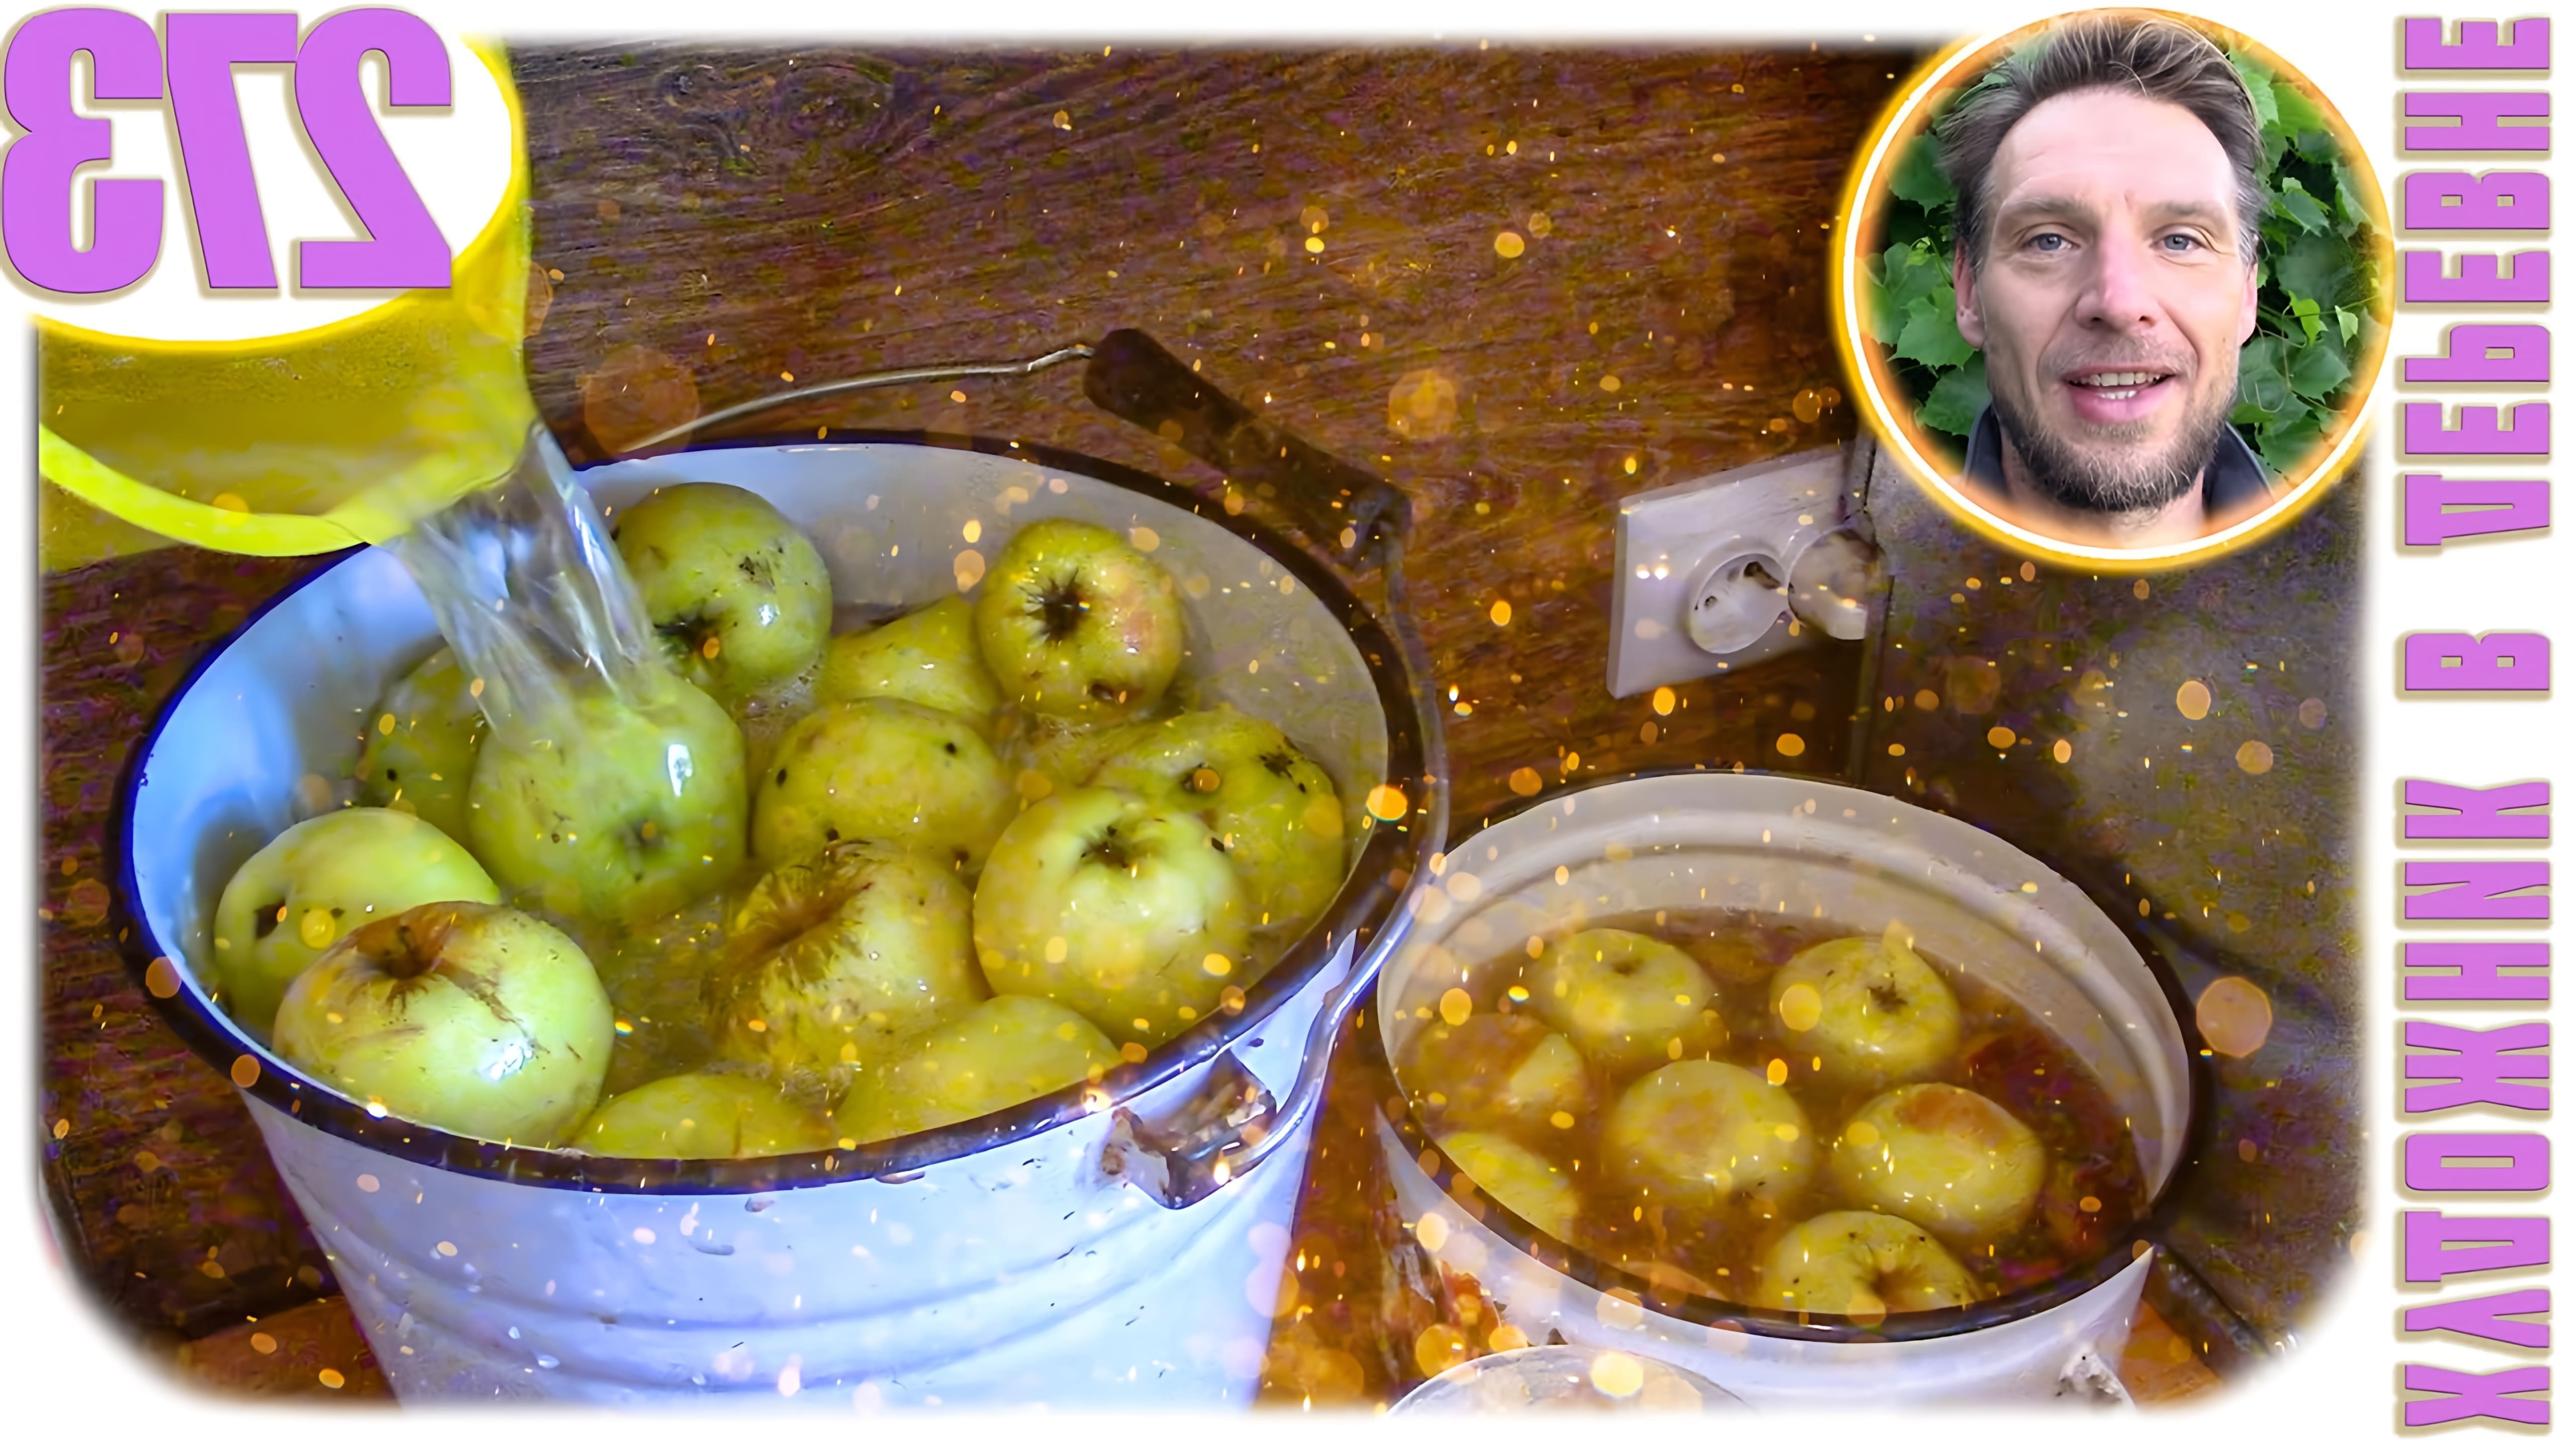 В этом видео автор делится рецептом моченых яблок, которые получаются очень вкусными